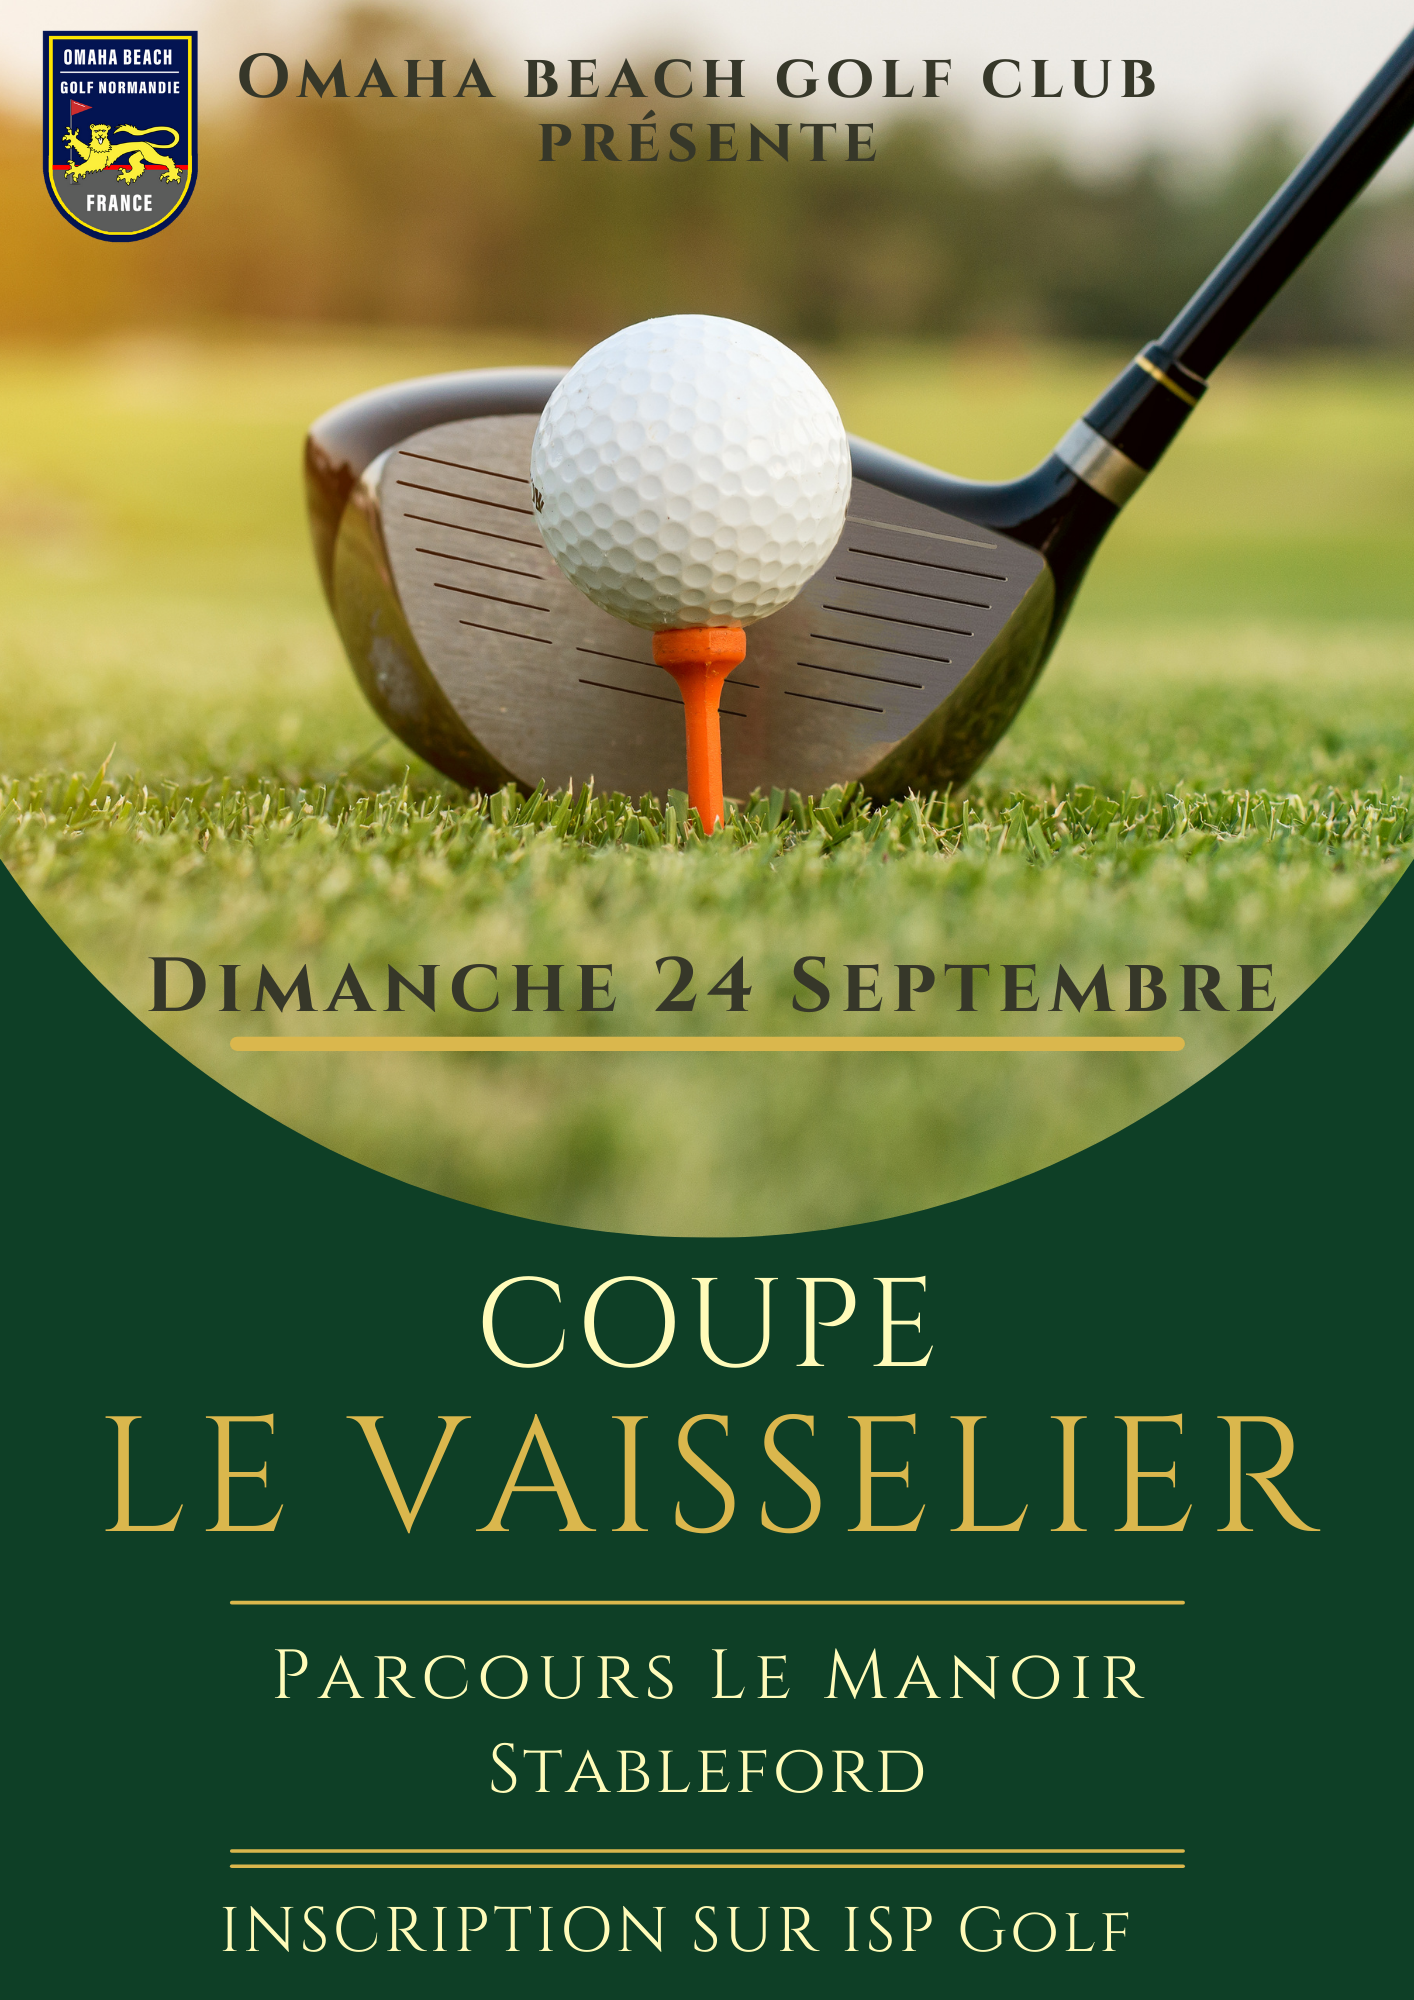 La Coupe Le Vaisselier reportée au Dimanche 24 Septembre